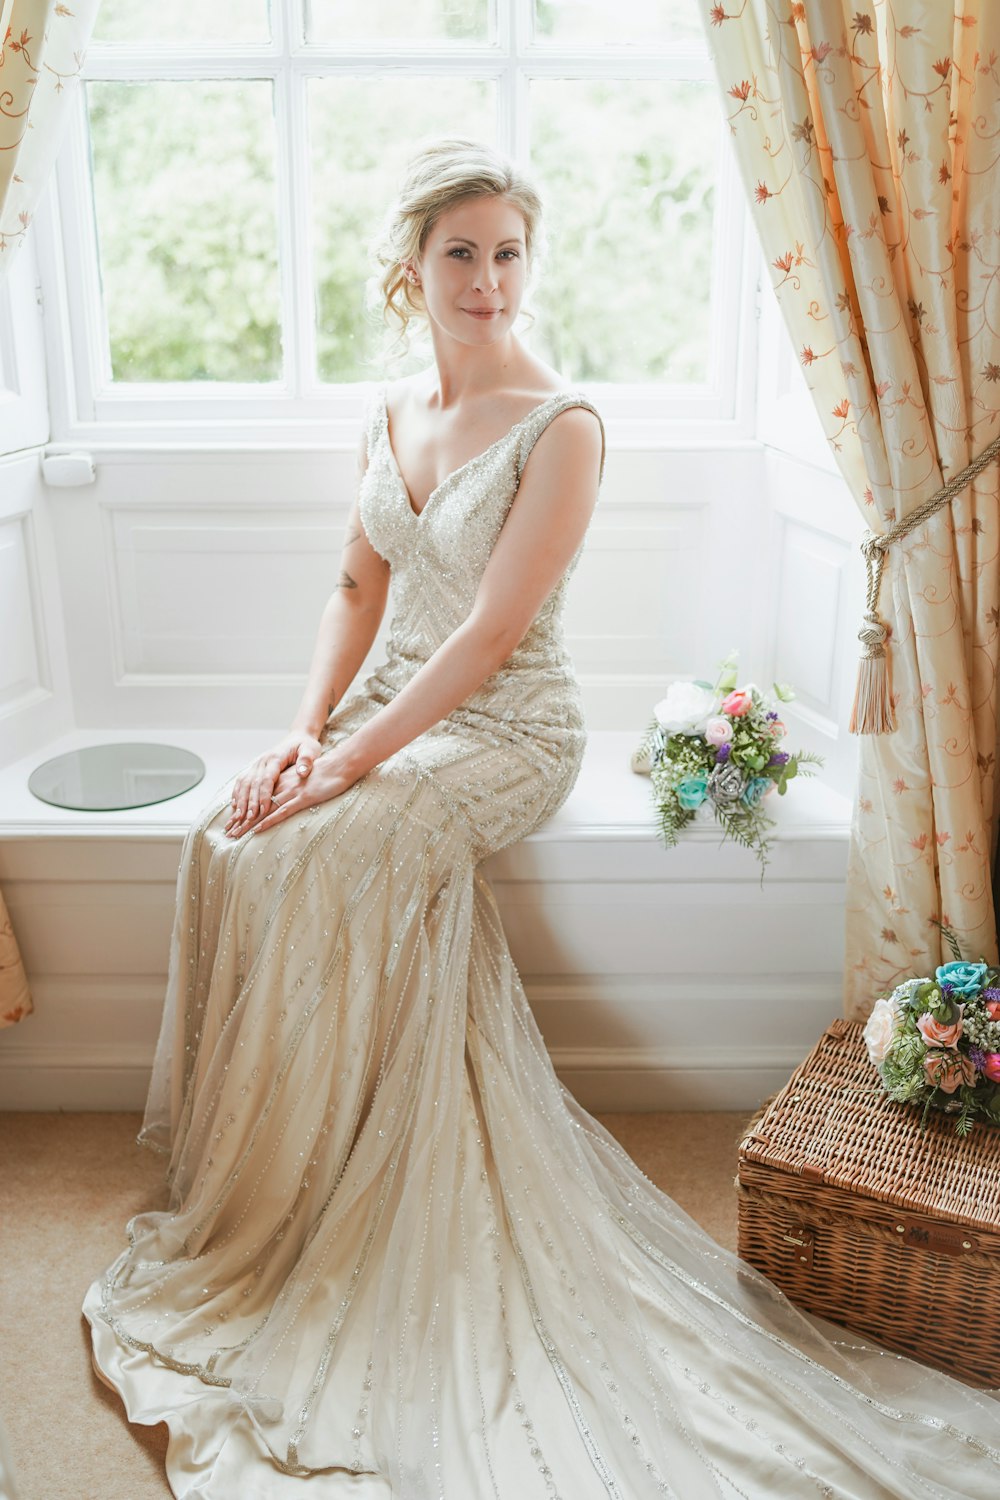 Eine Frau im Brautkleid sitzt auf einer Fensterbank